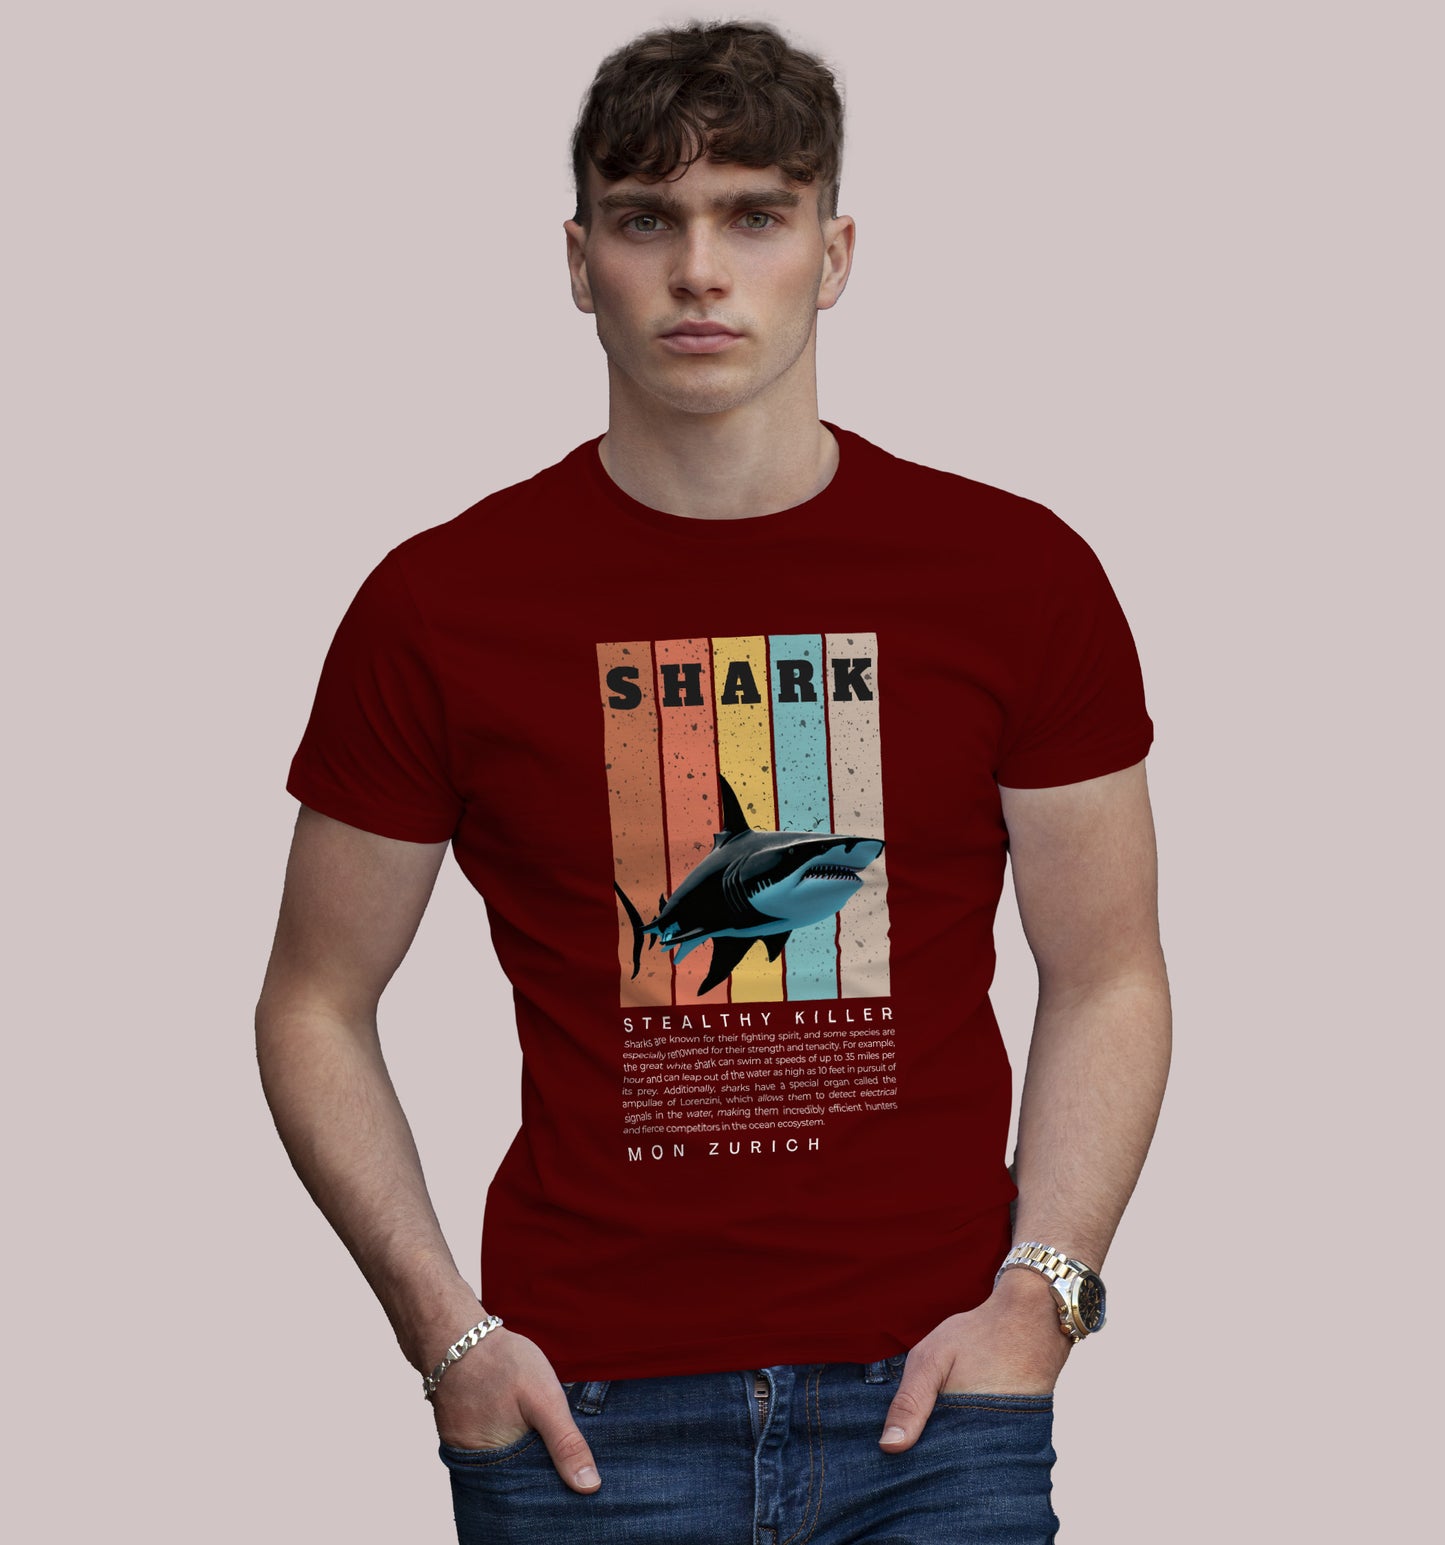 Shark - Stealthy Killer T-Shirt In Dark - Mon Zurich Originals